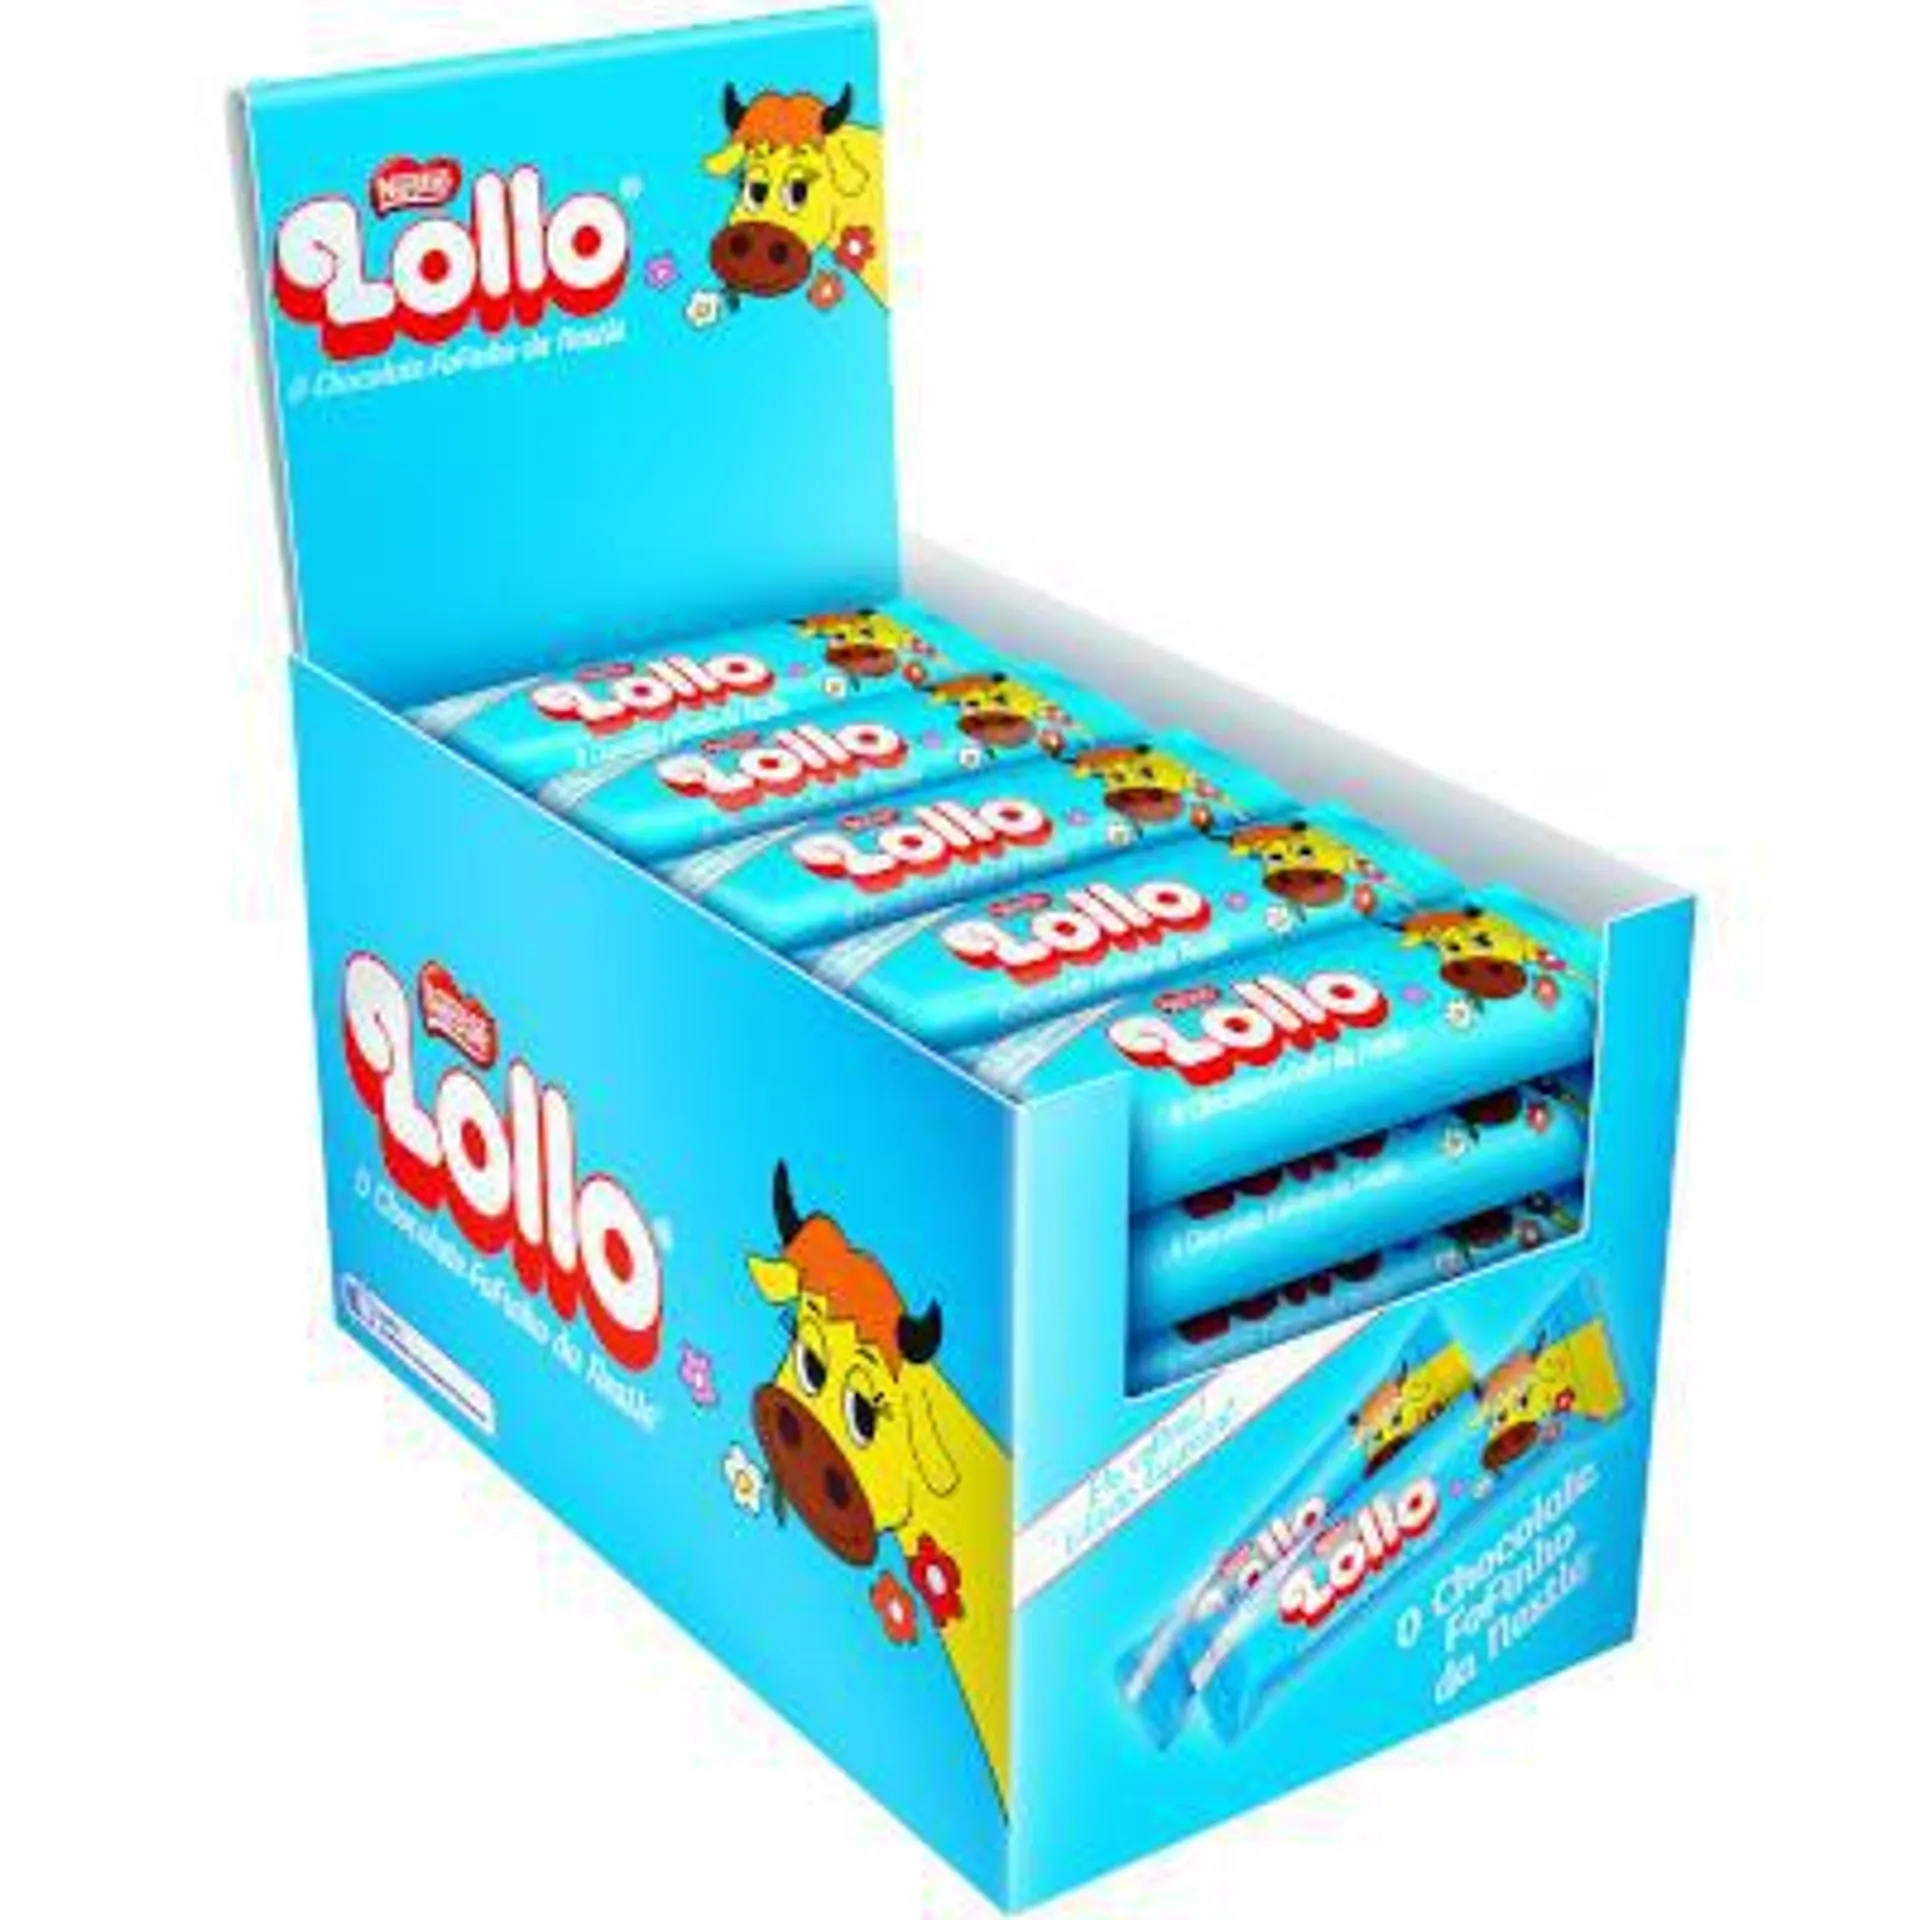 Chocolate Recheado com Leite Maltado caixa 30 unidades de 28g - Nestlé/Lollo